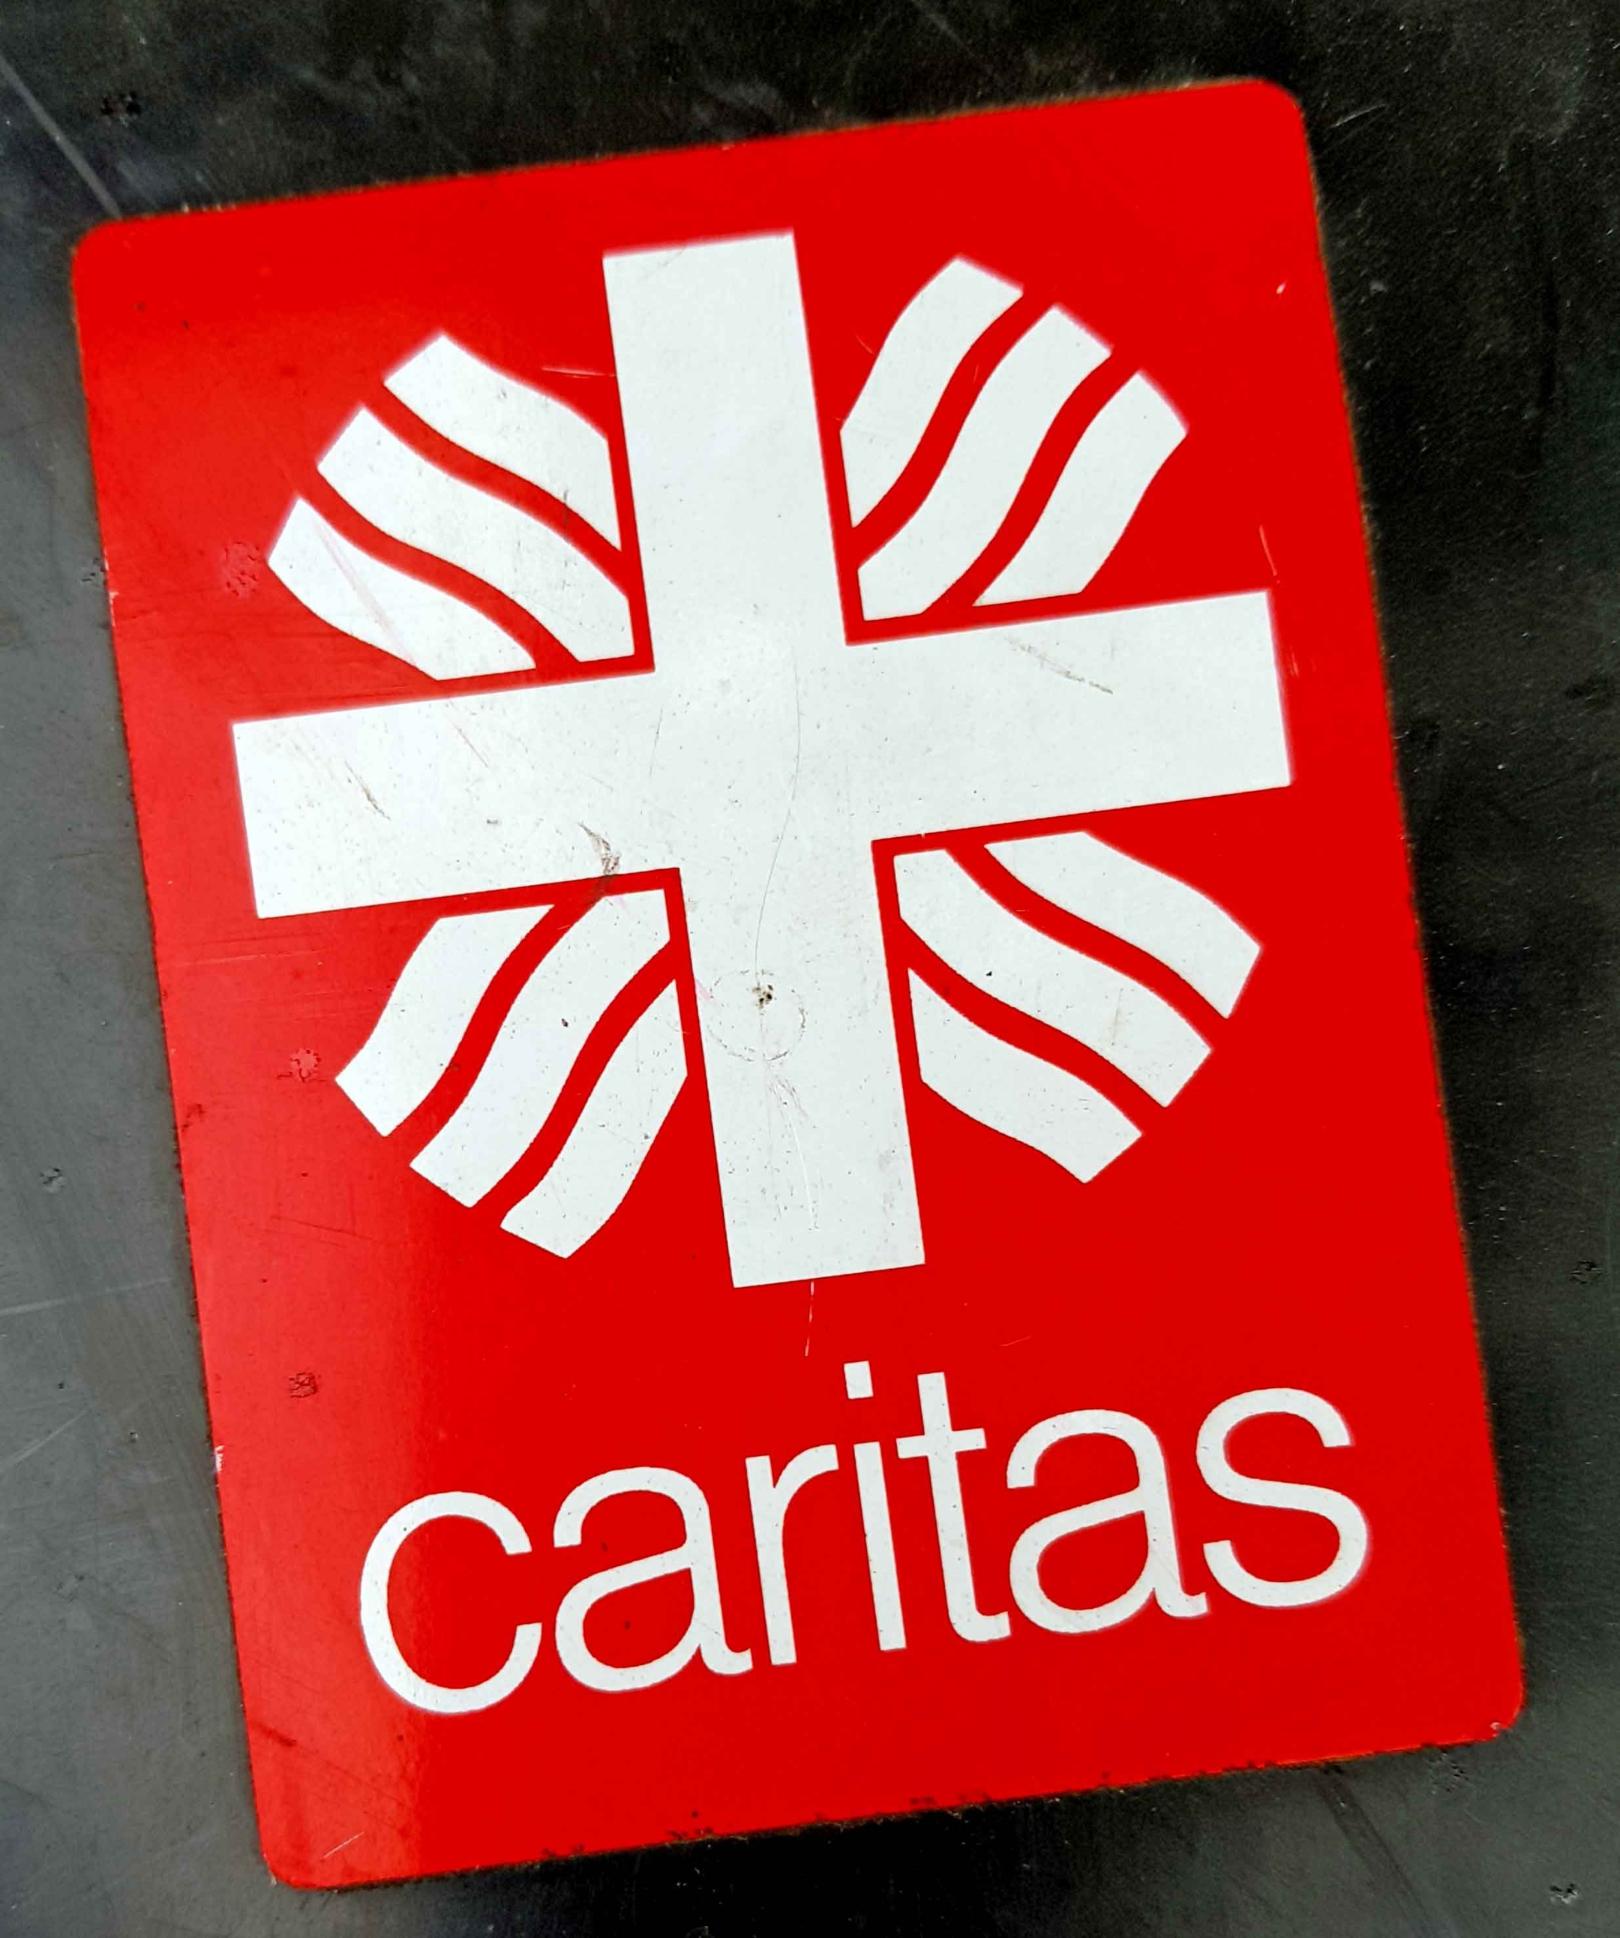 Caritas (c) Peter Weidemann / www.pfarrbriefservice.de